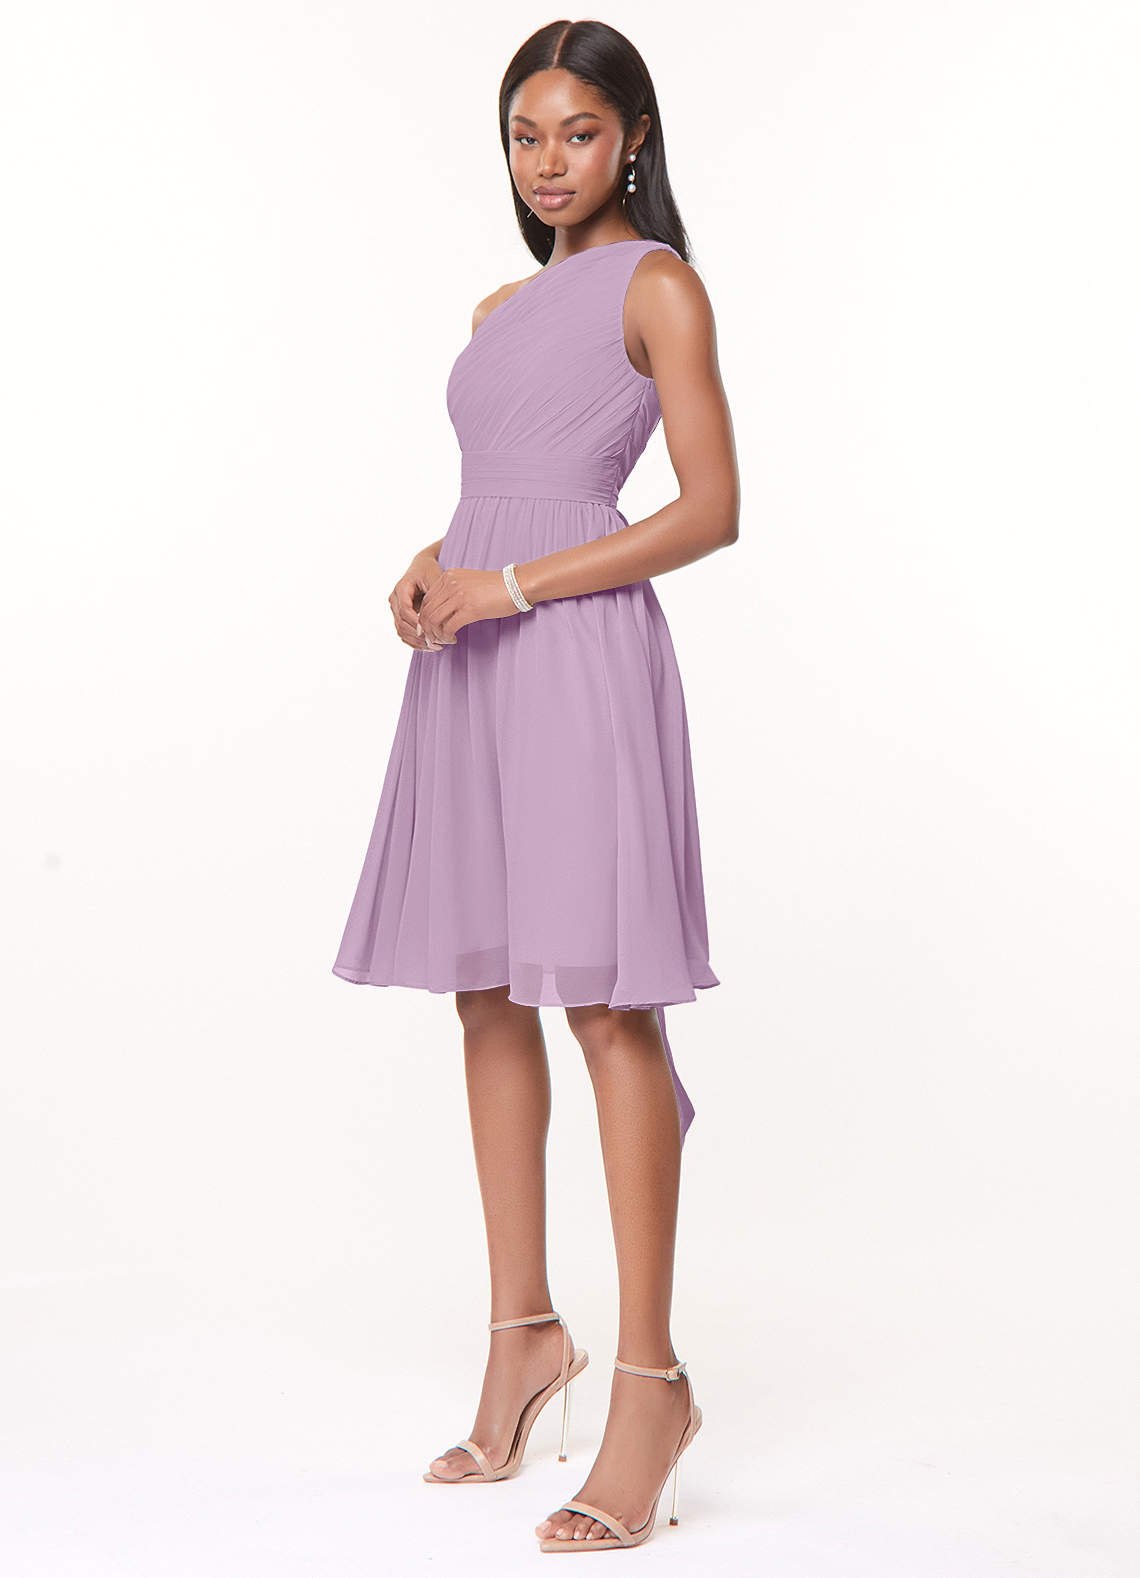 Azazie Katrina Bridesmaid Dresses A-Line One Shoulder Chiffon Knee-Length Dress image1